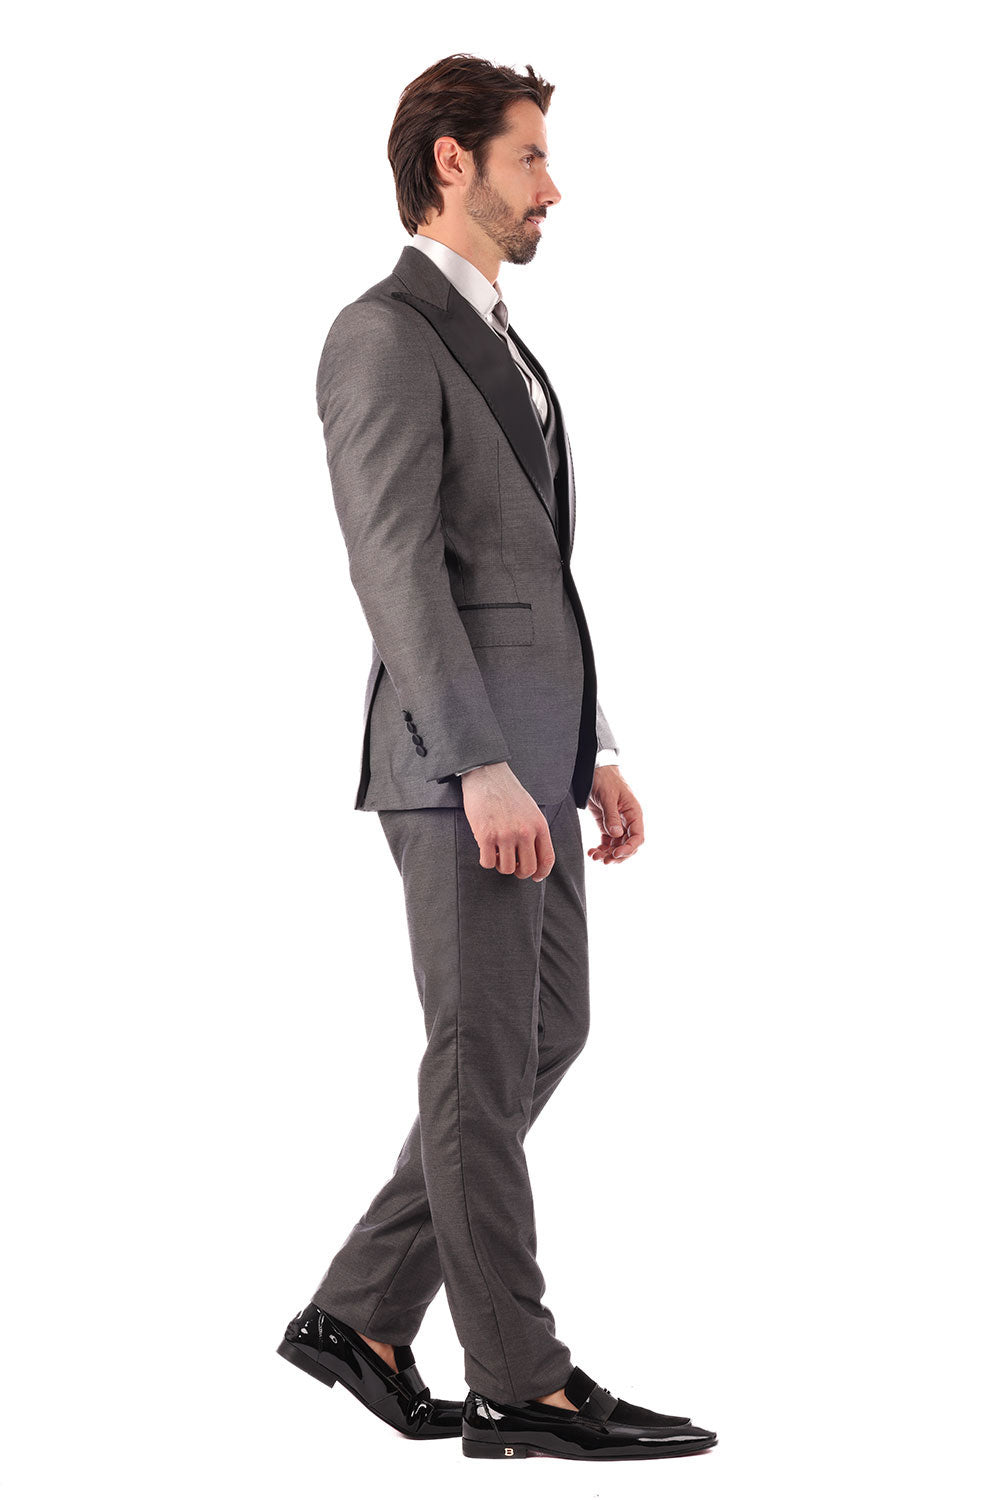 Barabas Men's Solid Color Peak Satin Lapel Suit Set 4SU13 Grey